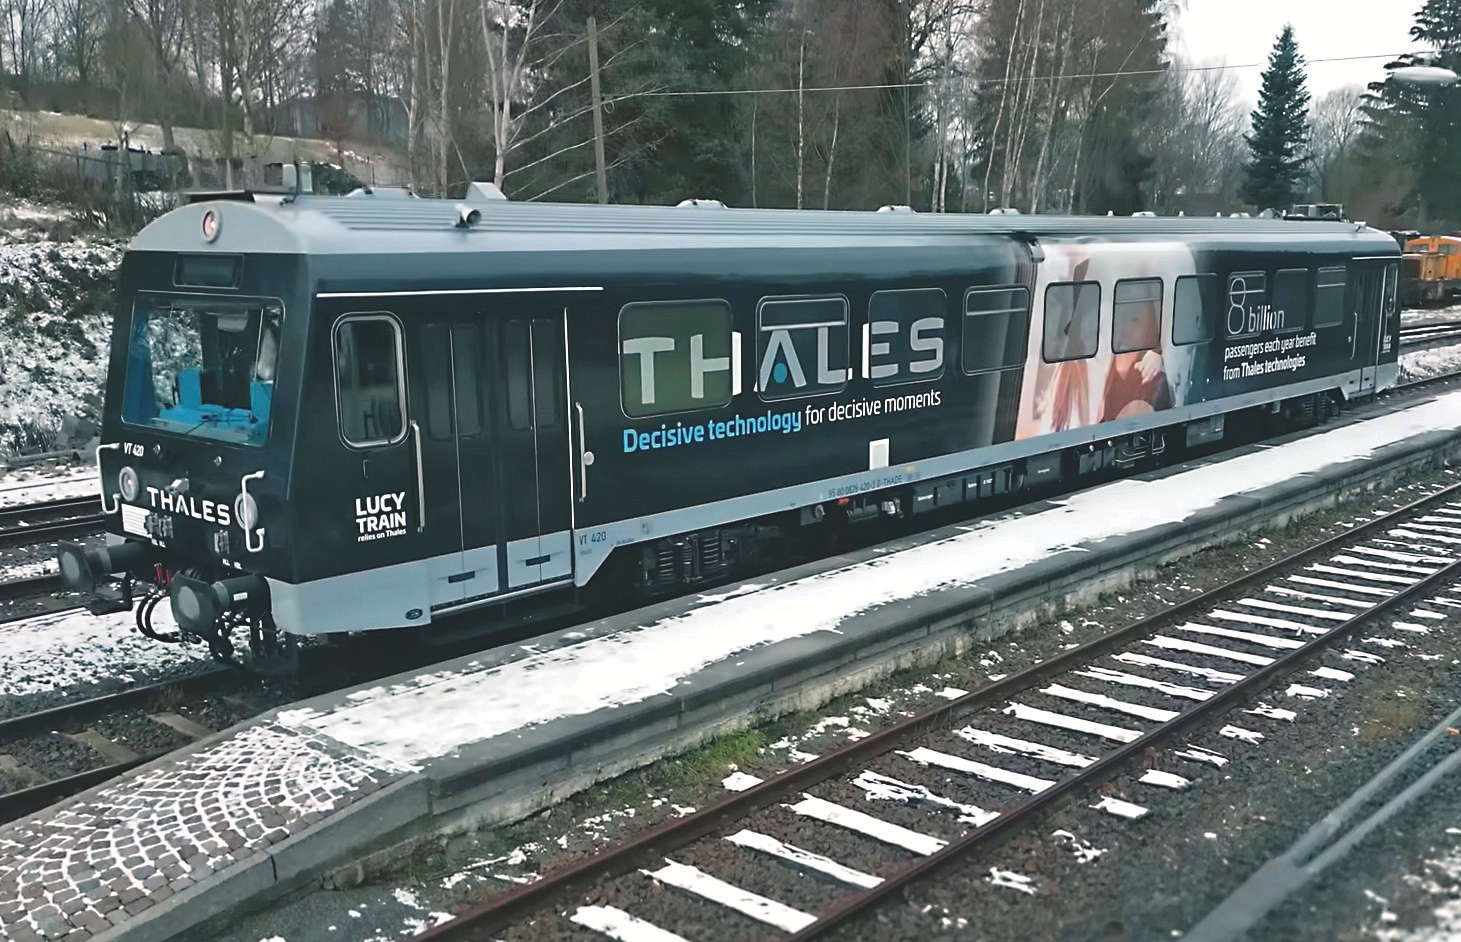 Испытательный поезд Lucy Train от Thales на треке в Рудных горах (Германия), управляемый оператором с расстояния 300 км